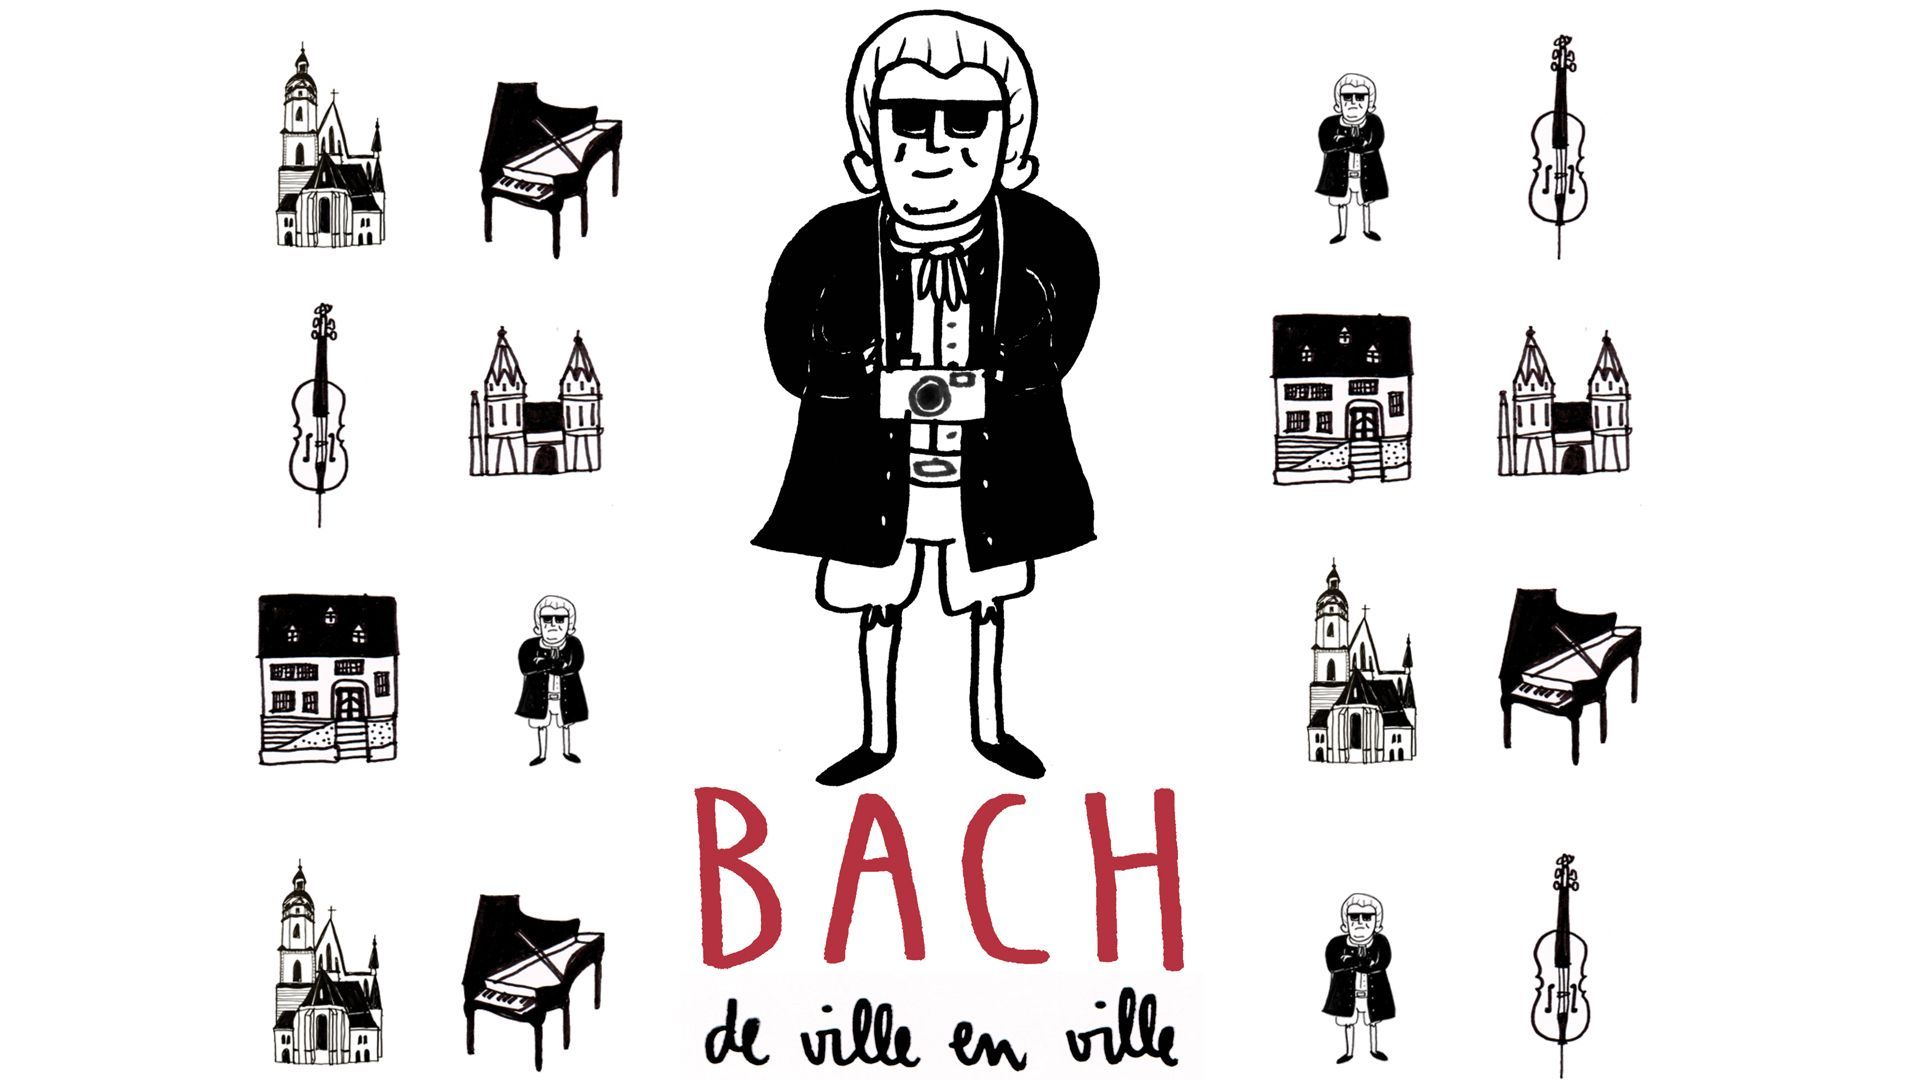 Découvrez "Bach, de ville en ville"